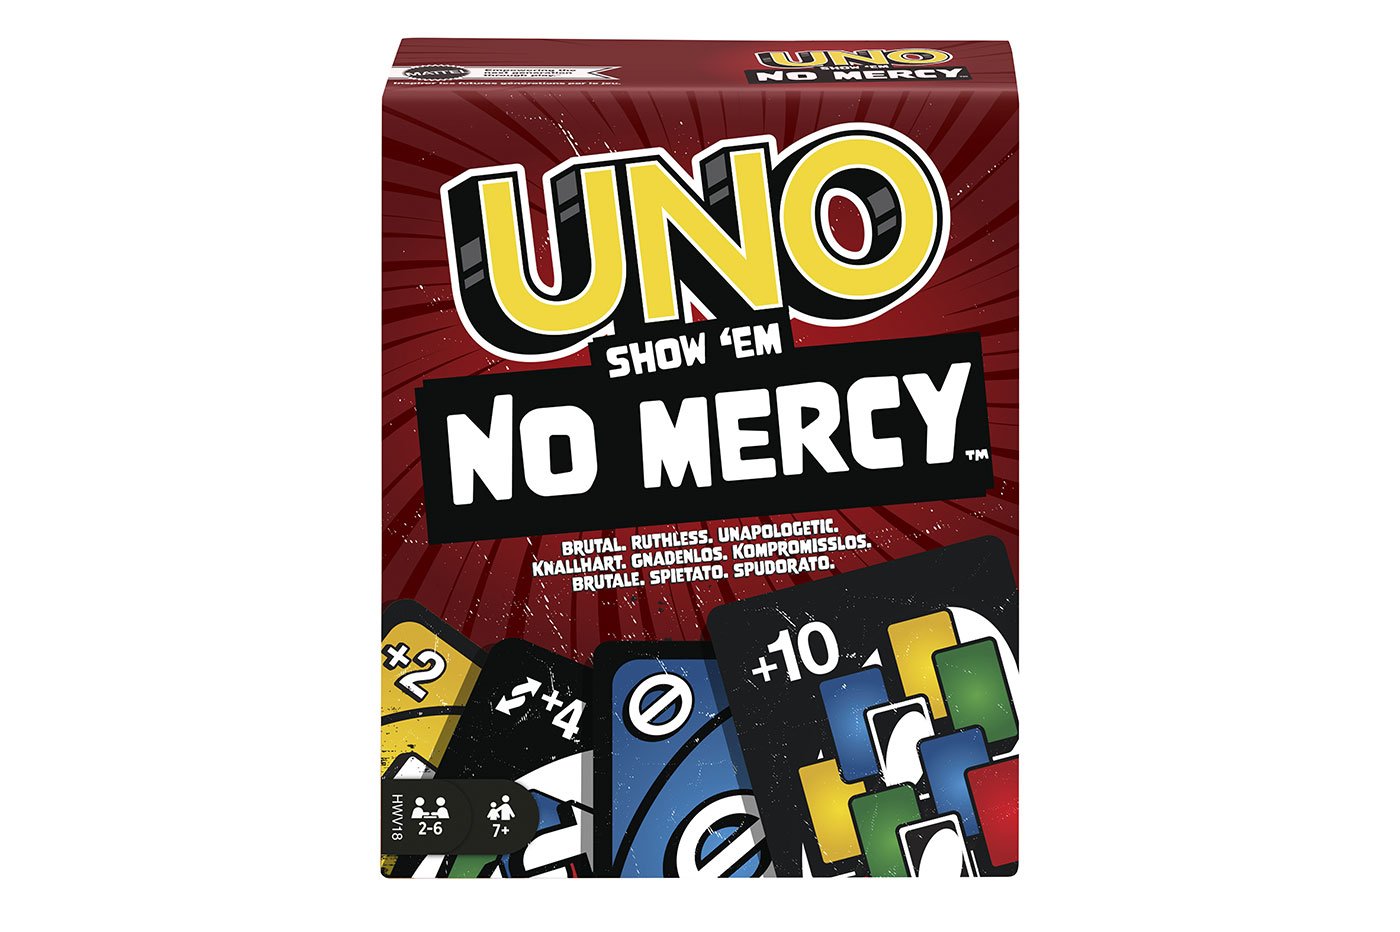 Uno Show 'Em No mercy : tout sur le nouveau Uno sans pitié !